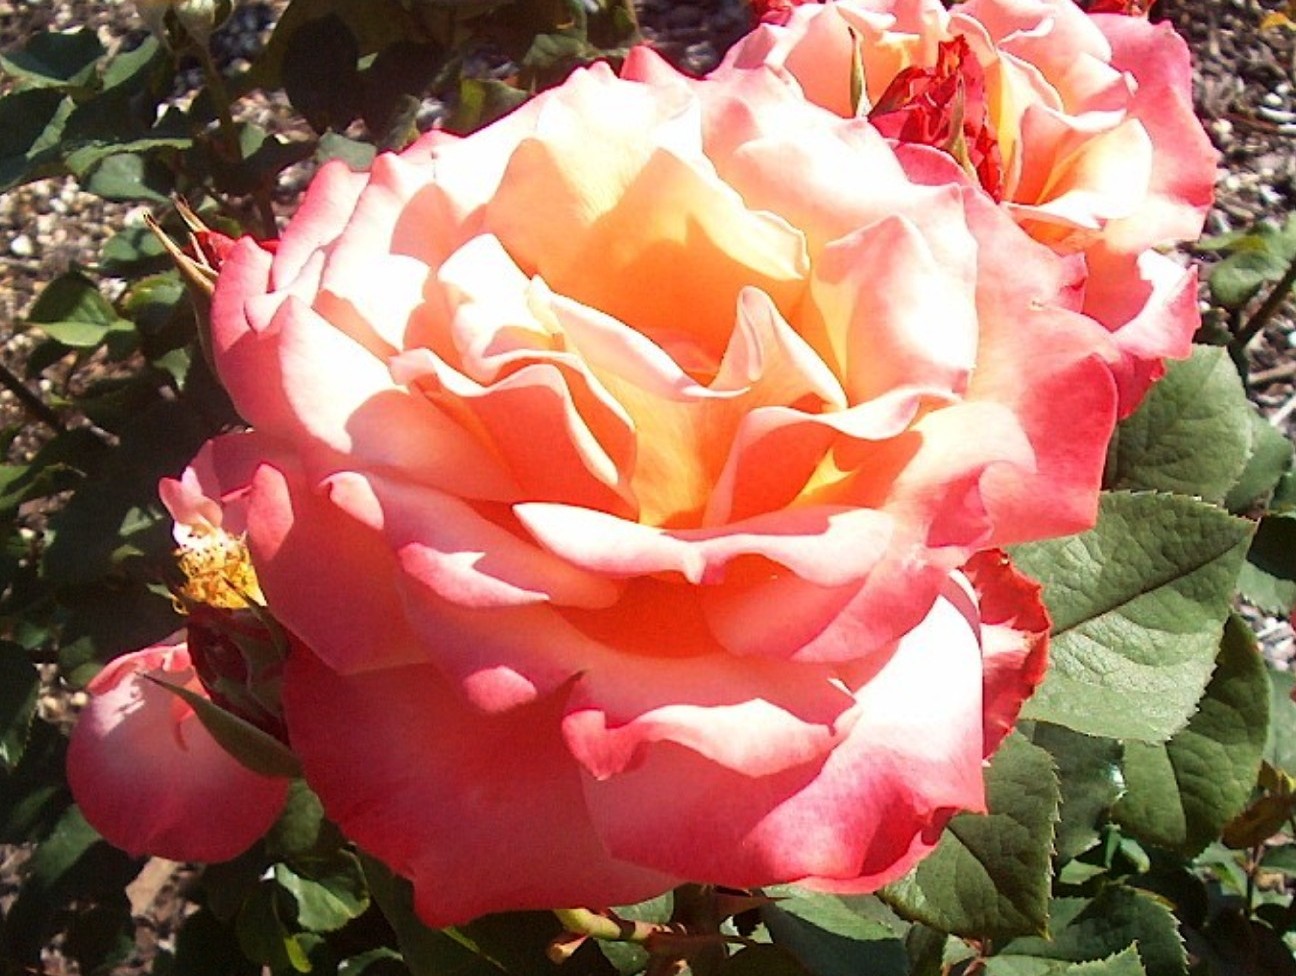 Rosa 'Tuscan Sun' / Tuscan Sun Rose